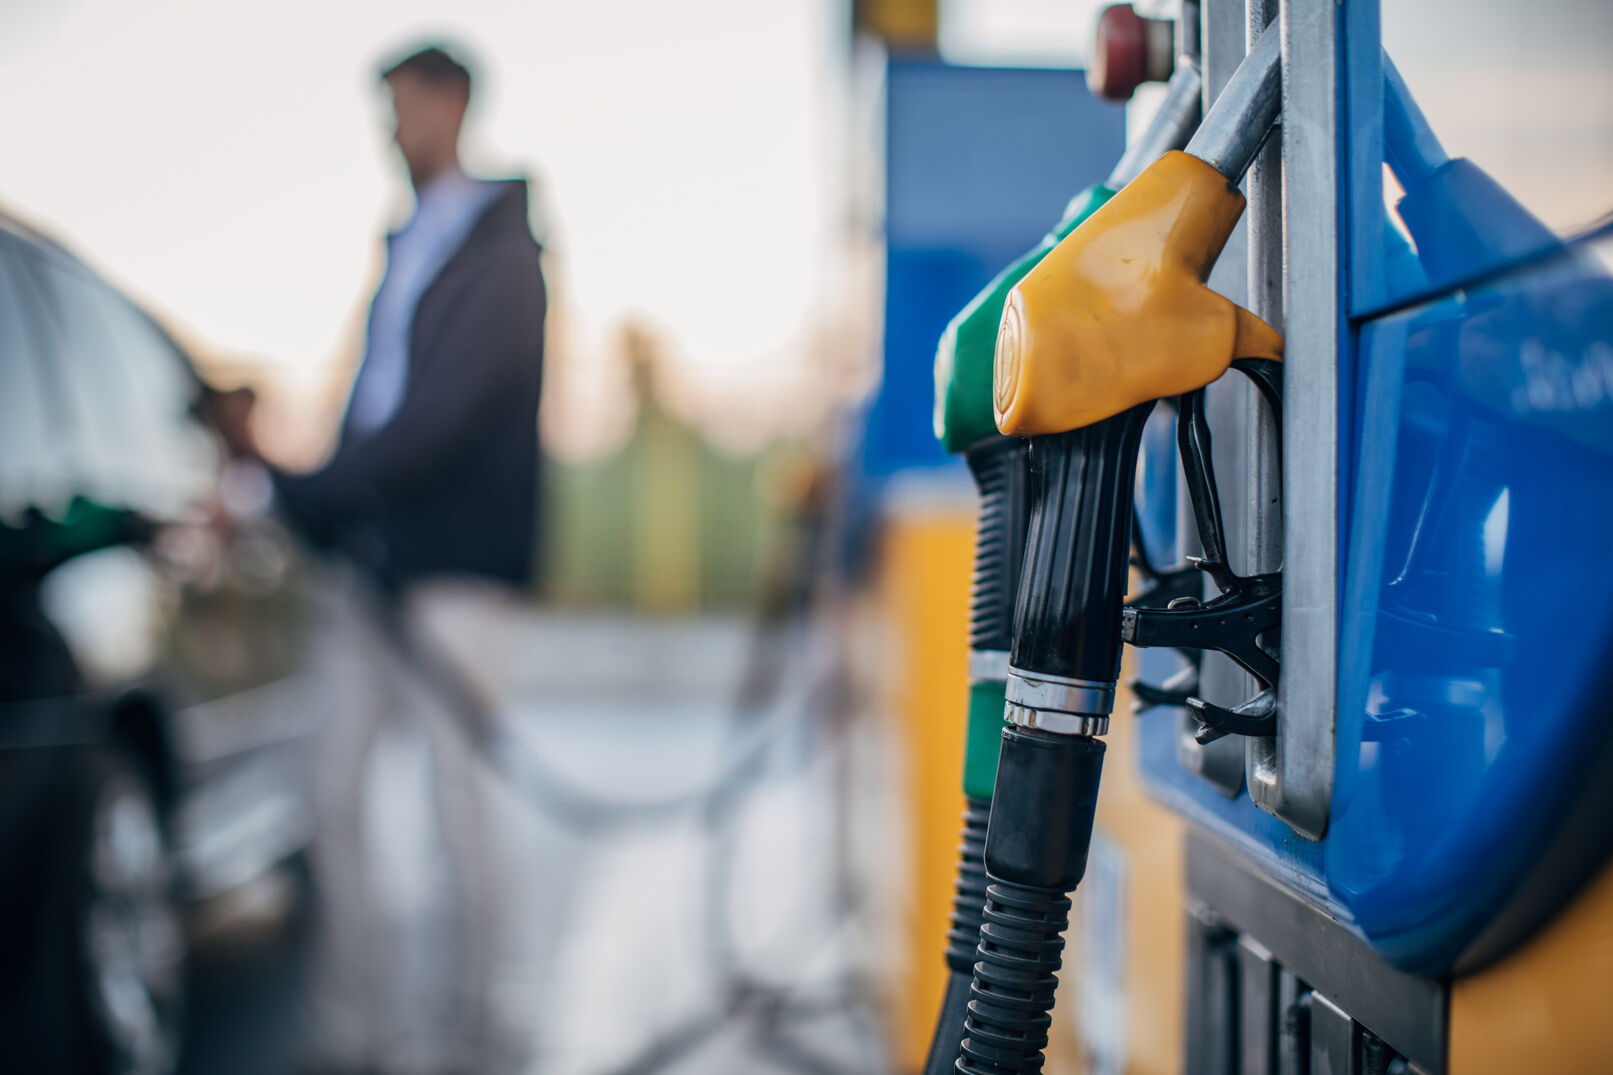 Benzinklau auf die rabiate Art: Diebe bohren Löcher in Autotank